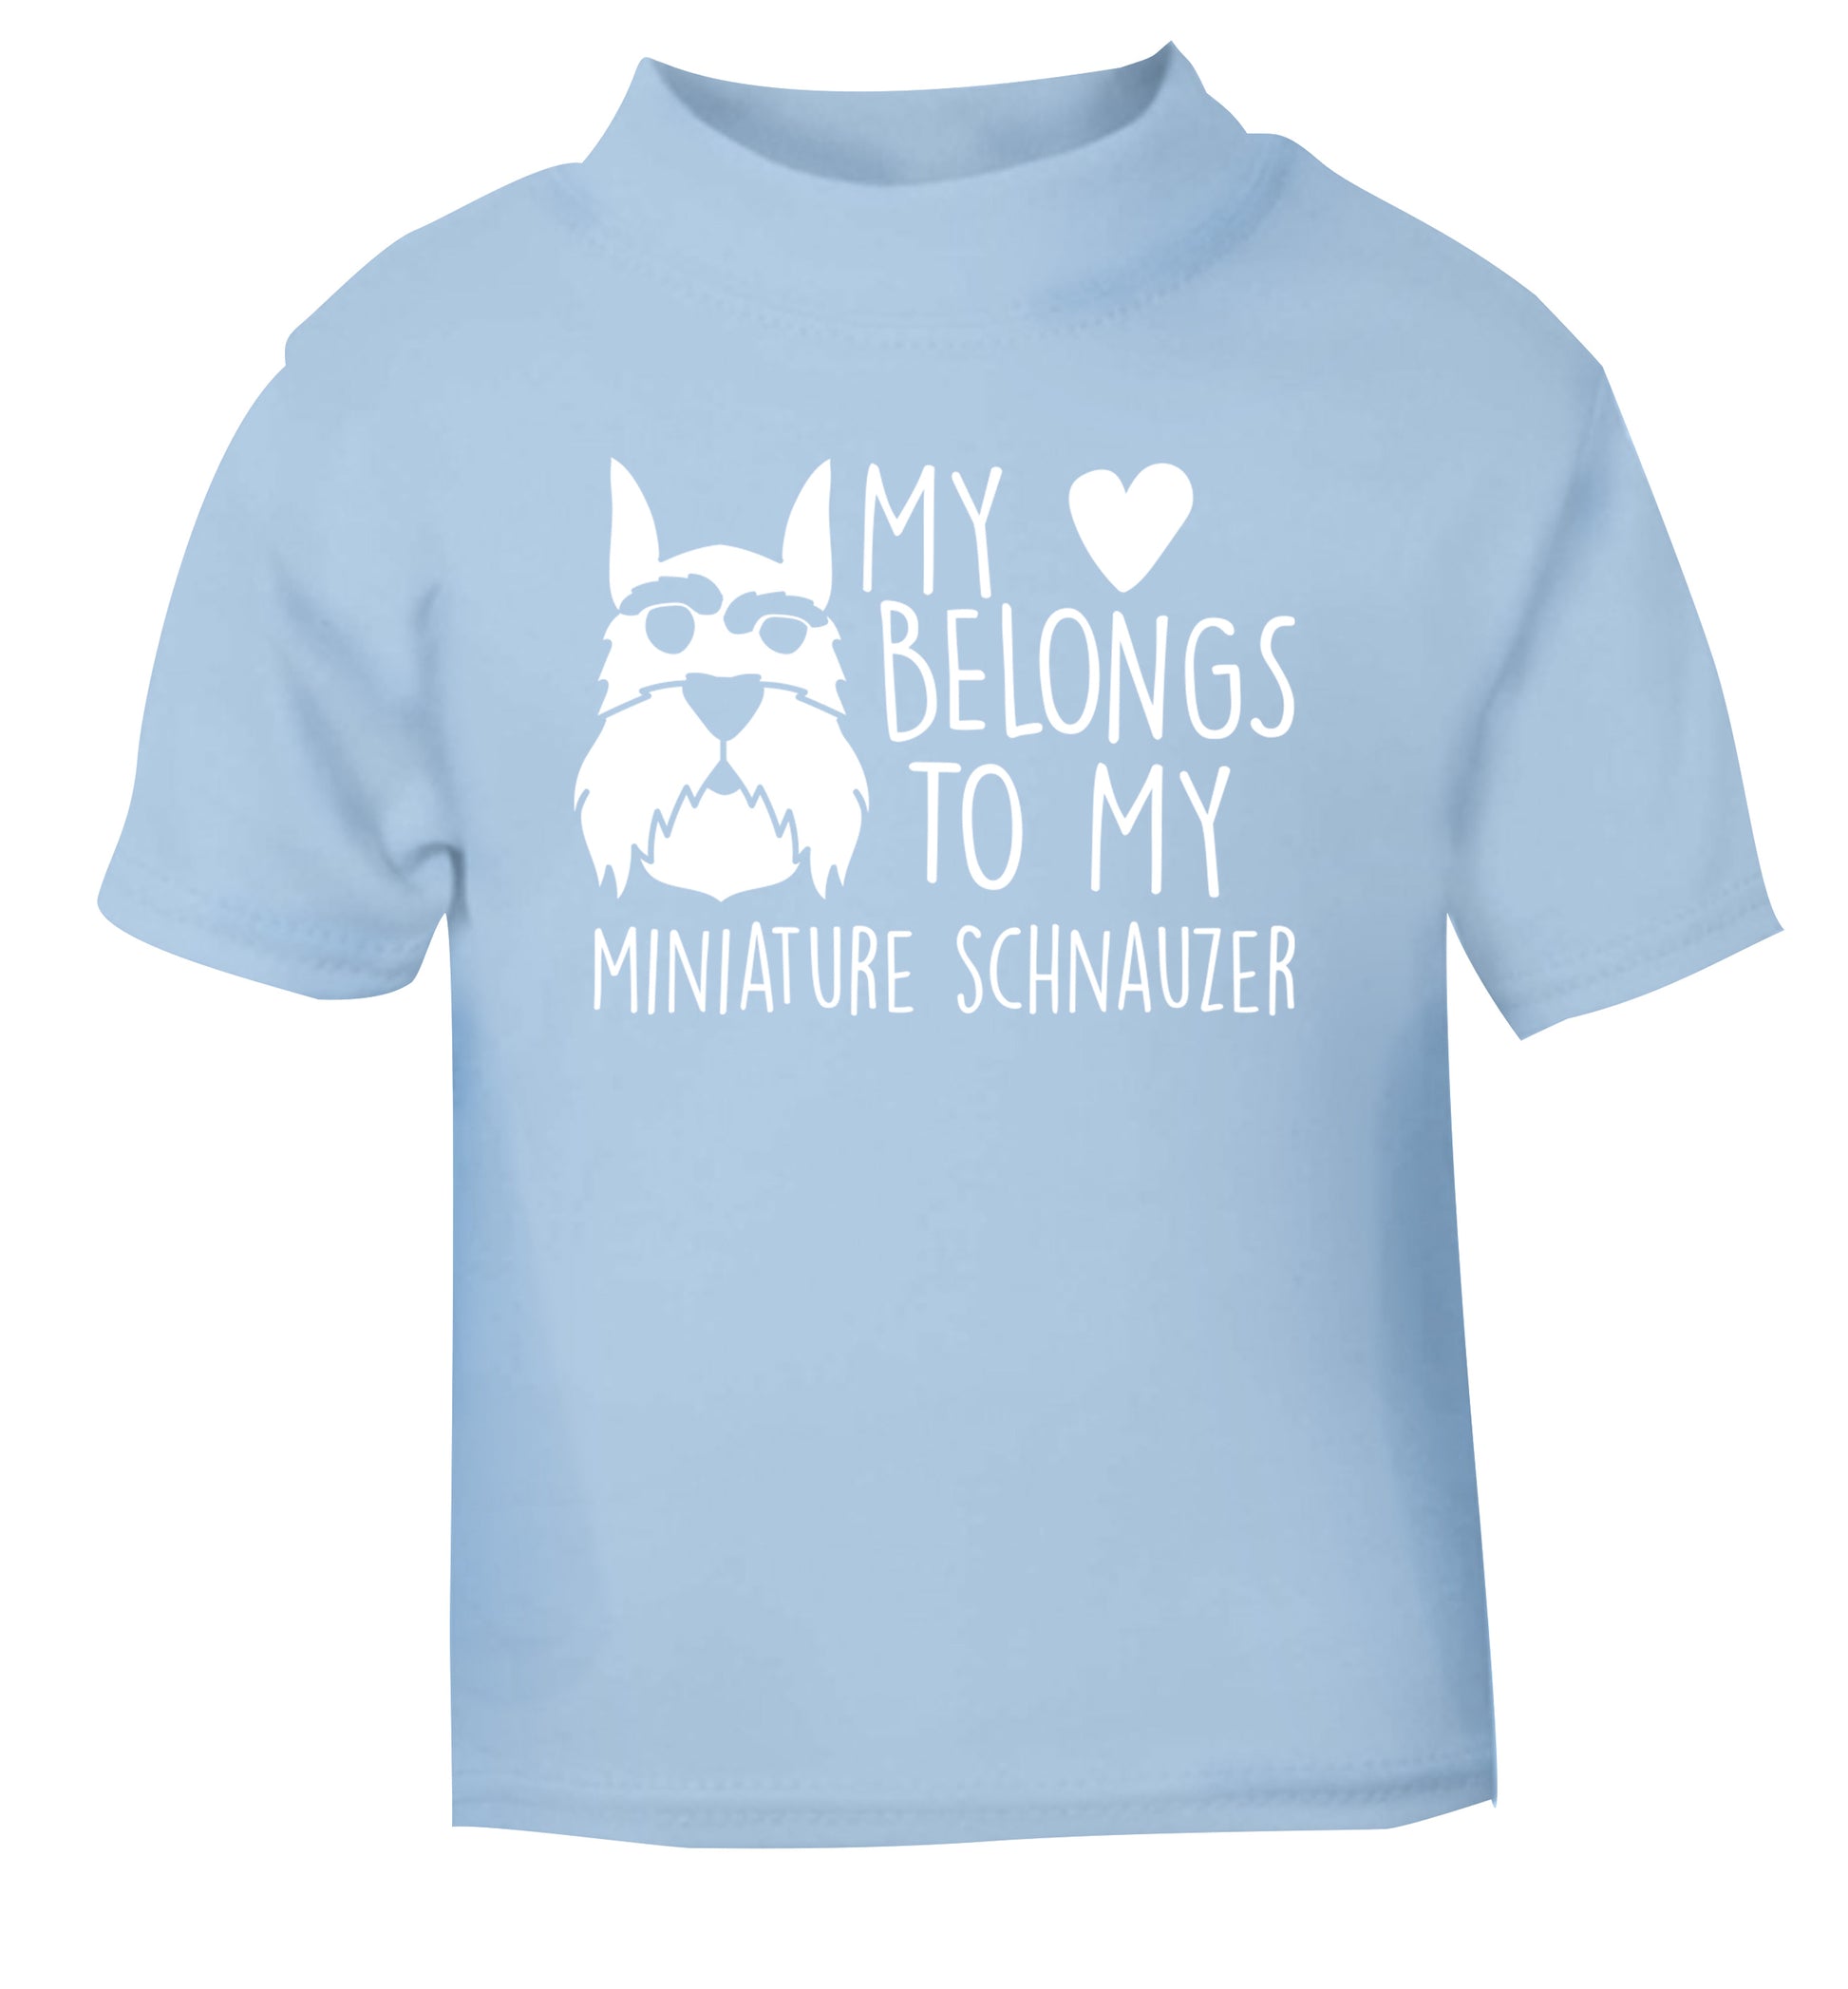 My heart belongs to my miniature schnauzer light blue Baby Toddler Tshirt 2 Years